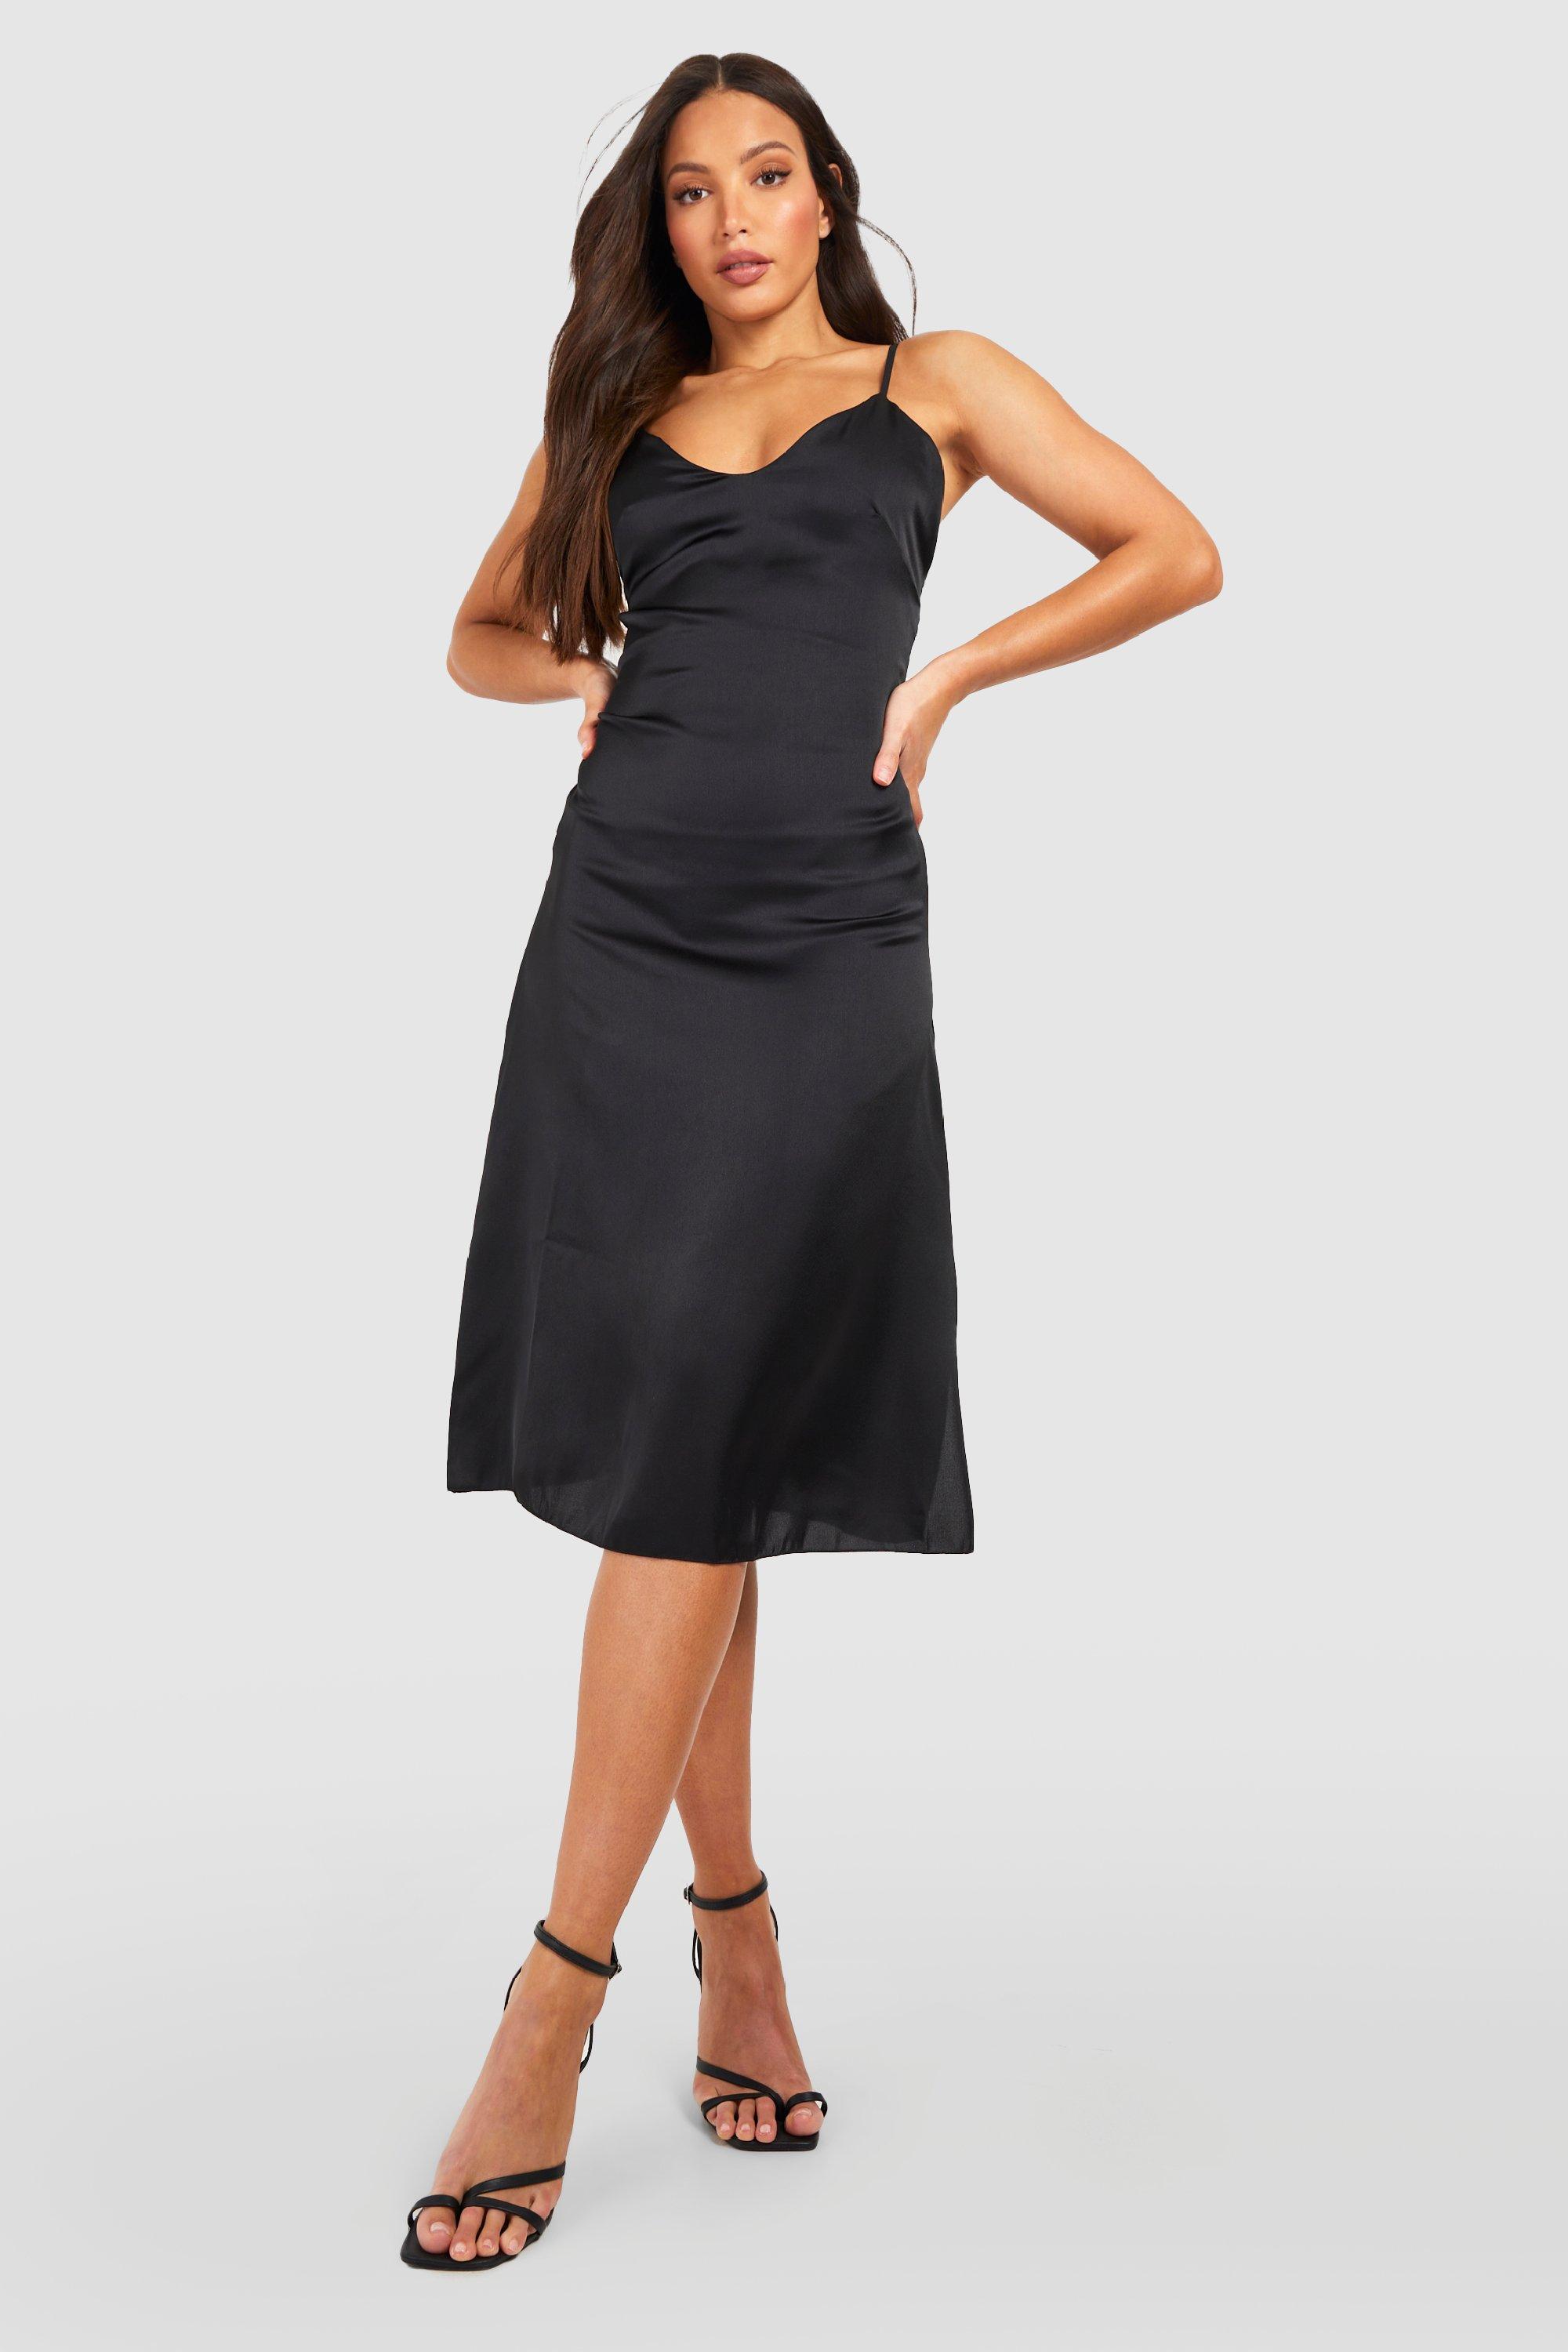 Full Length Slips Dresses, Long Black Slip Dress